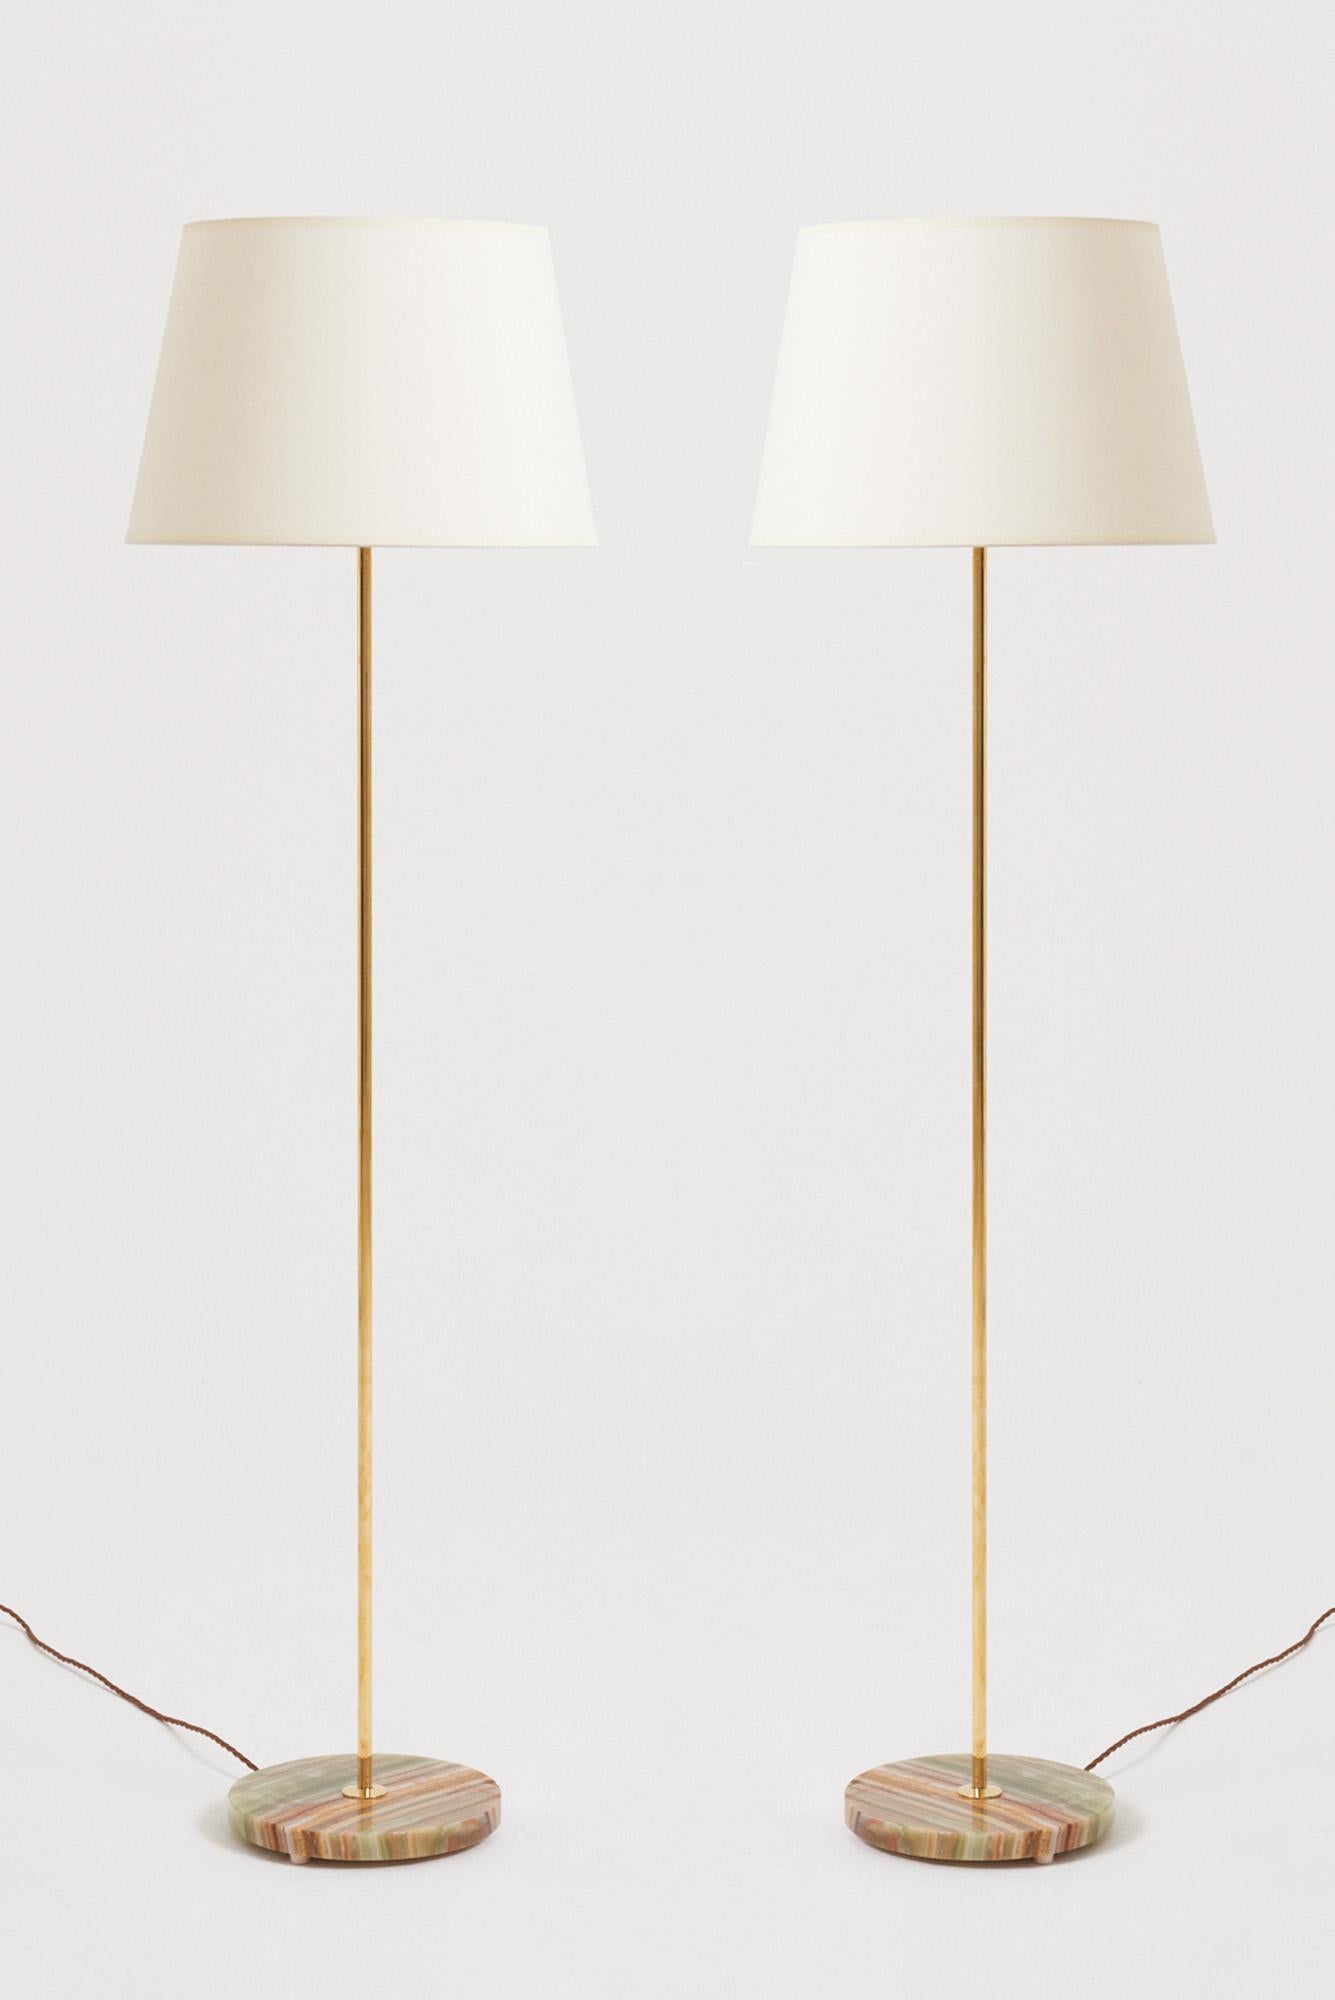 Paire de lampadaires en laiton et en onyx massif.
Suède, 1960-1970
Avec l'abat-jour : 138,5 cm de haut par 40,5 cm de diamètre
Base de la lampe uniquement : 120,5 cm de haut par 23,5 cm de diamètre